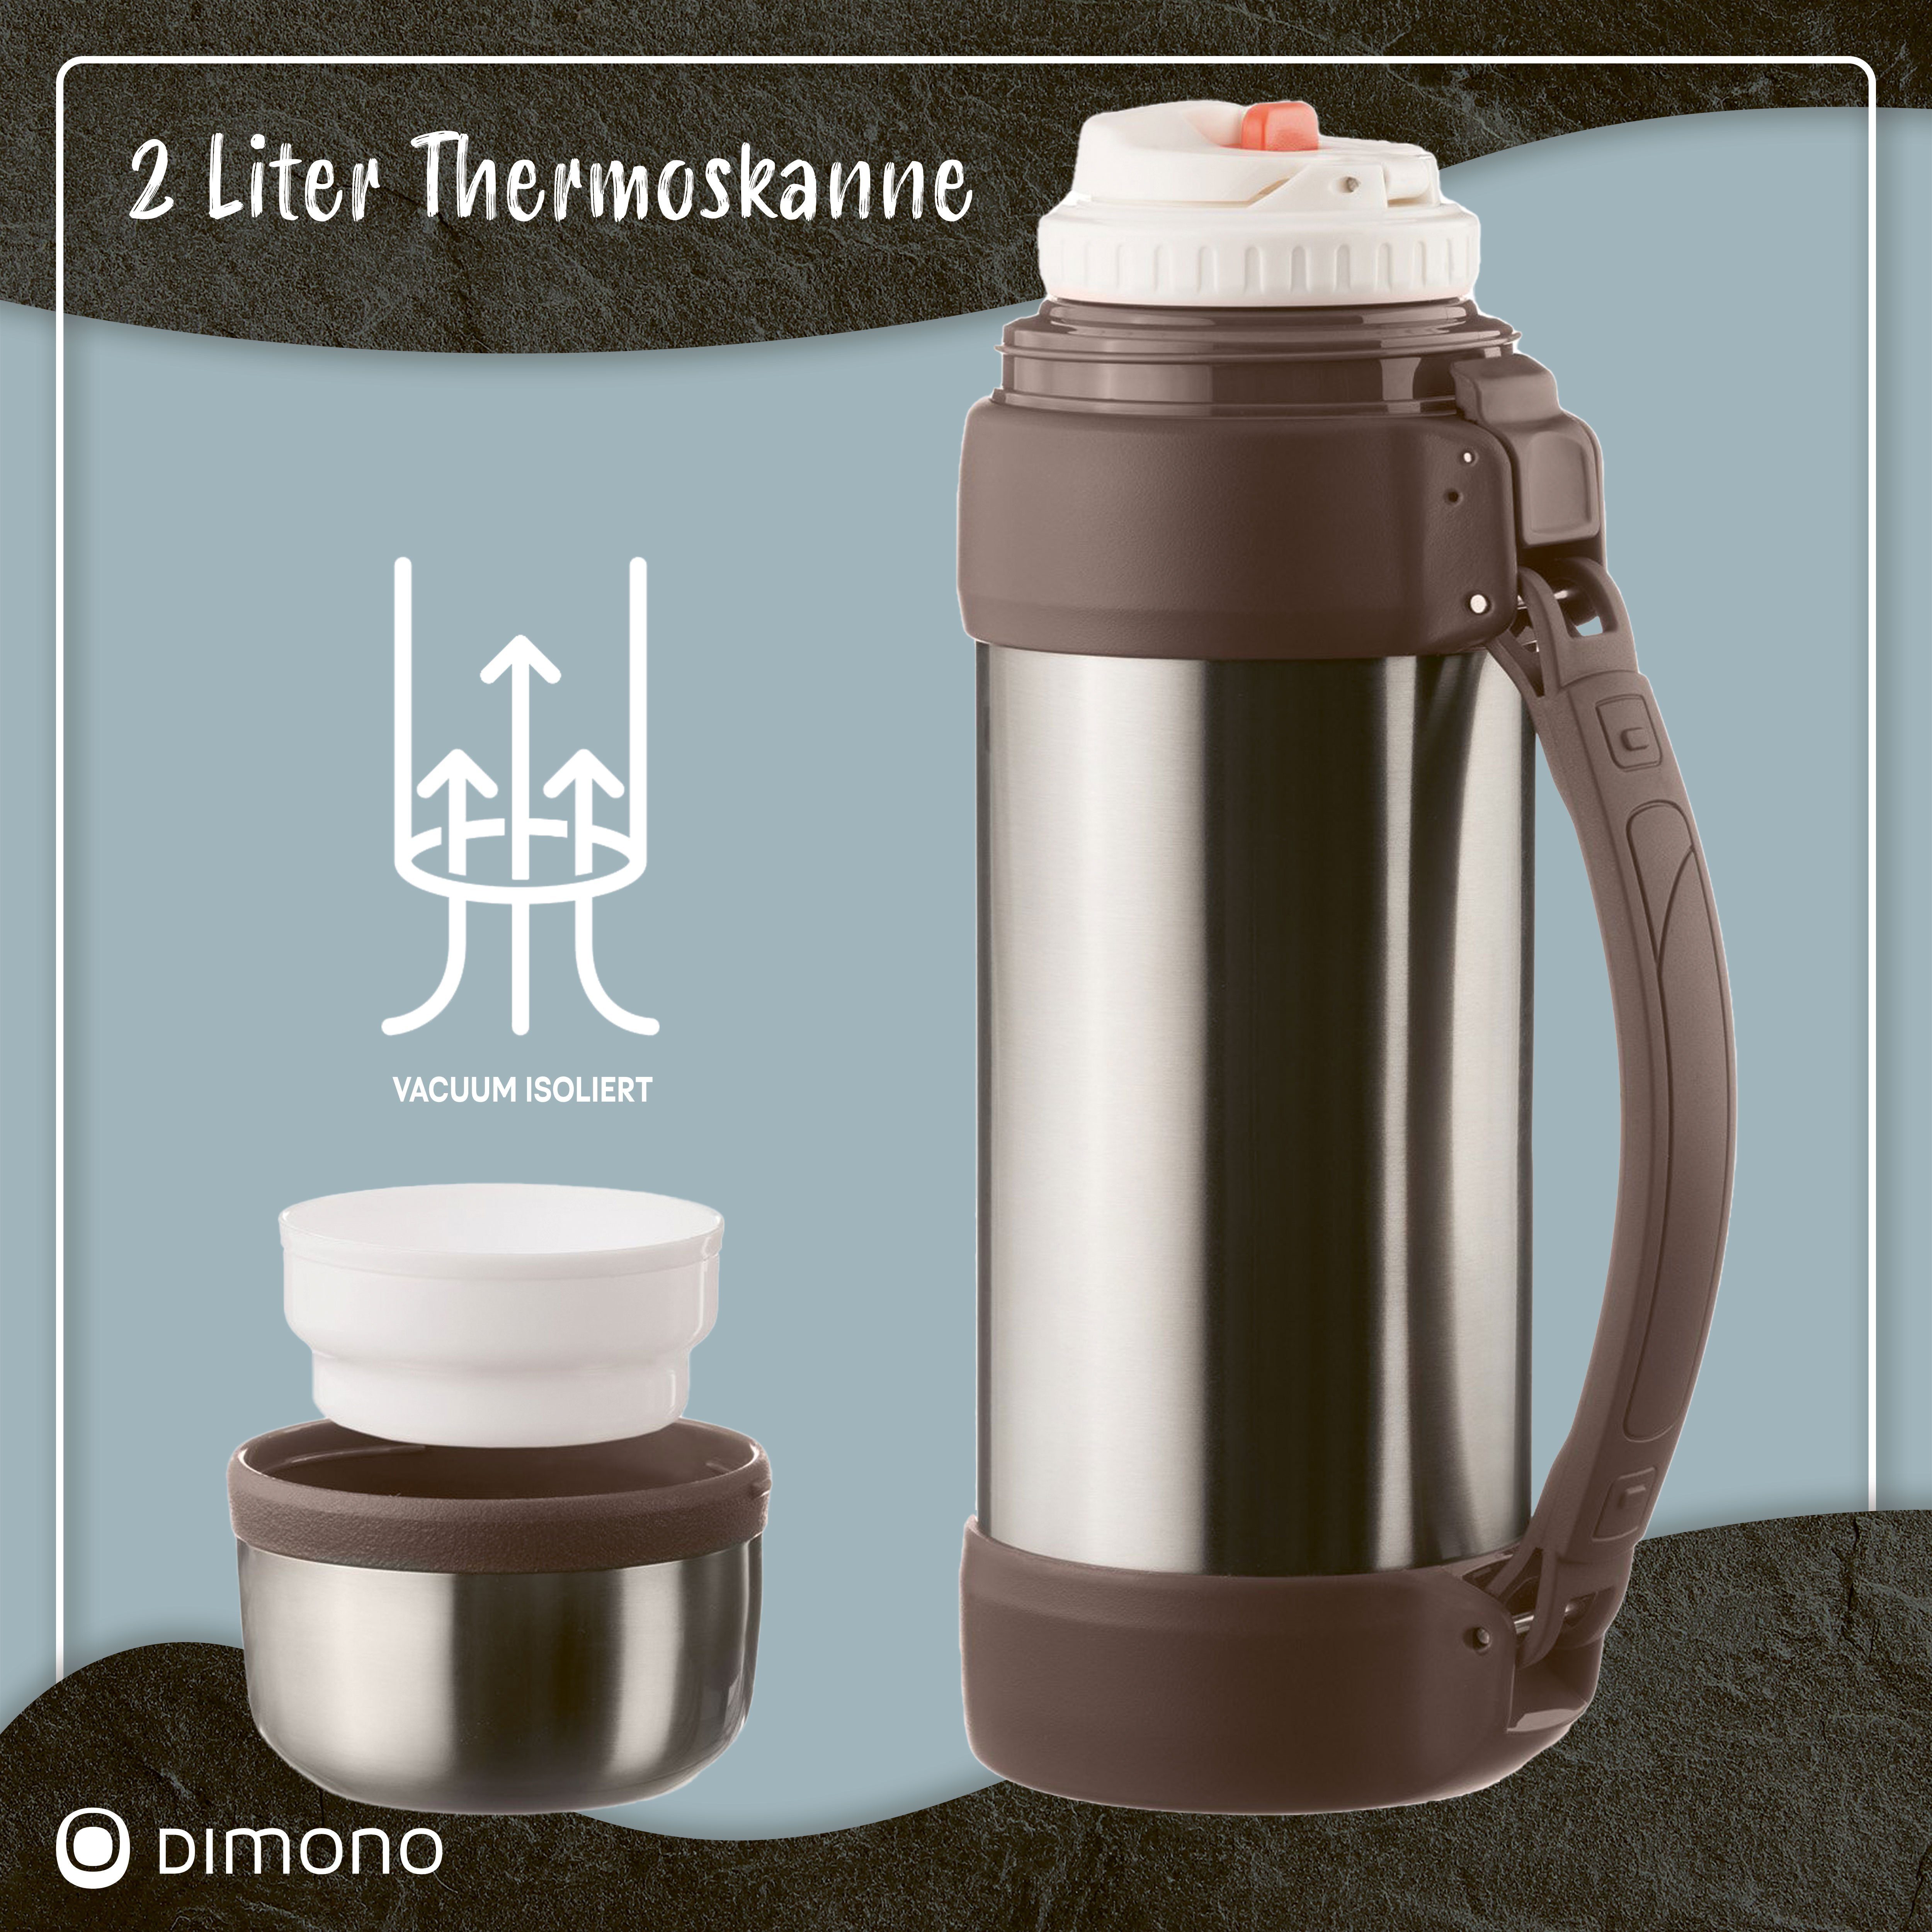 Dimono Thermoflasche Vakuum Isolierkanne Thermoskanne Pur XXL, 2 Liter Isolierflasche Edelstahl